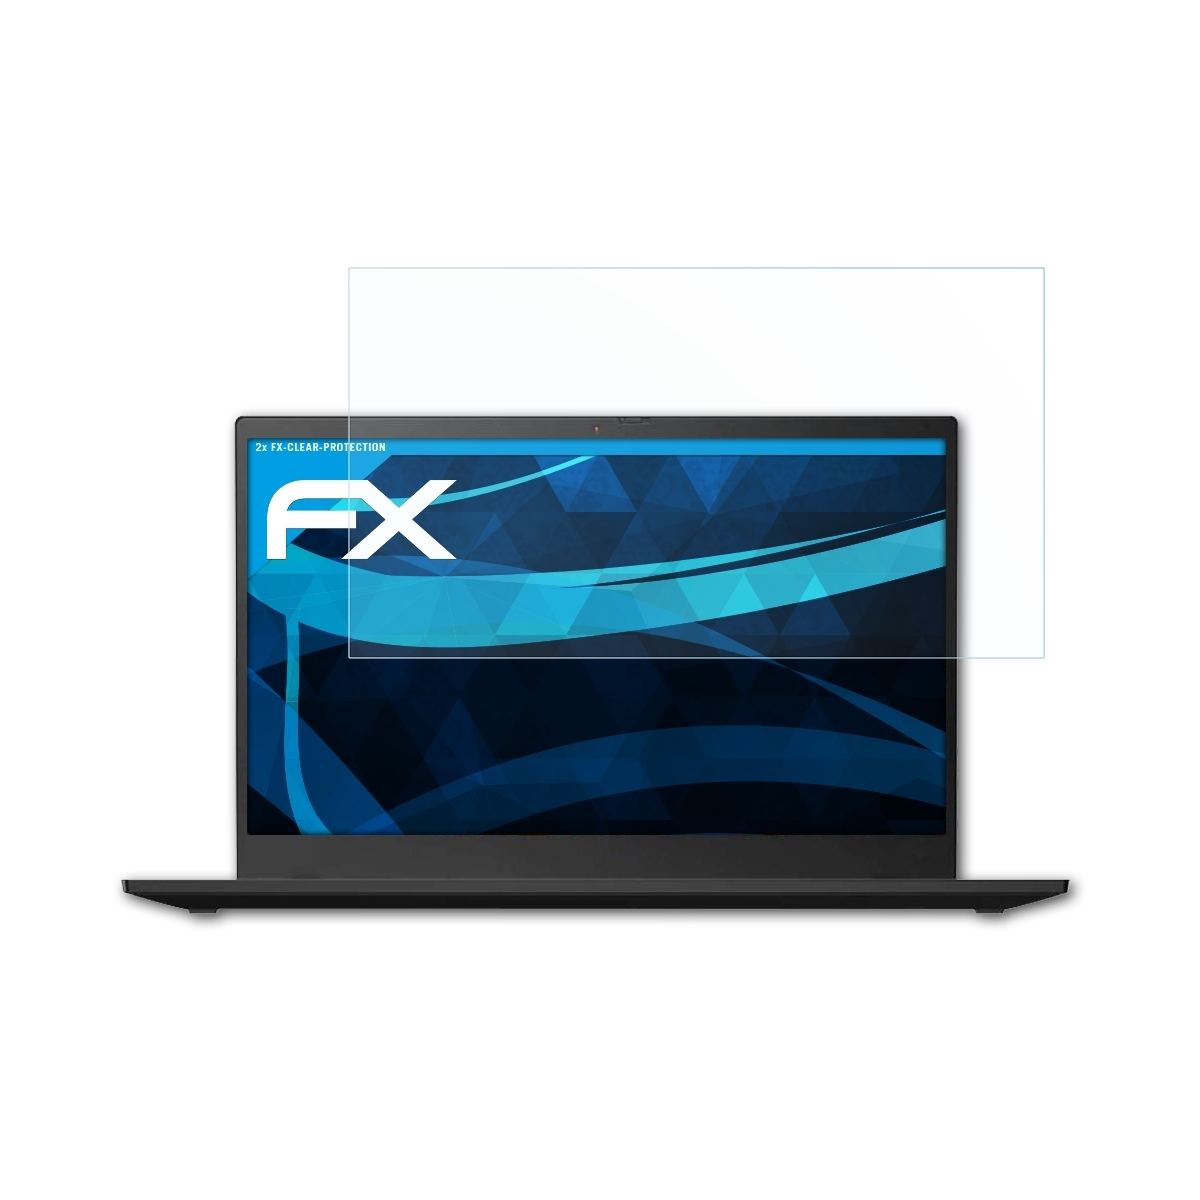 ATFOLIX 2x X1 Displayschutz(für ThinkPad Lenovo Gen. Carbon FX-Clear (7h 2019))